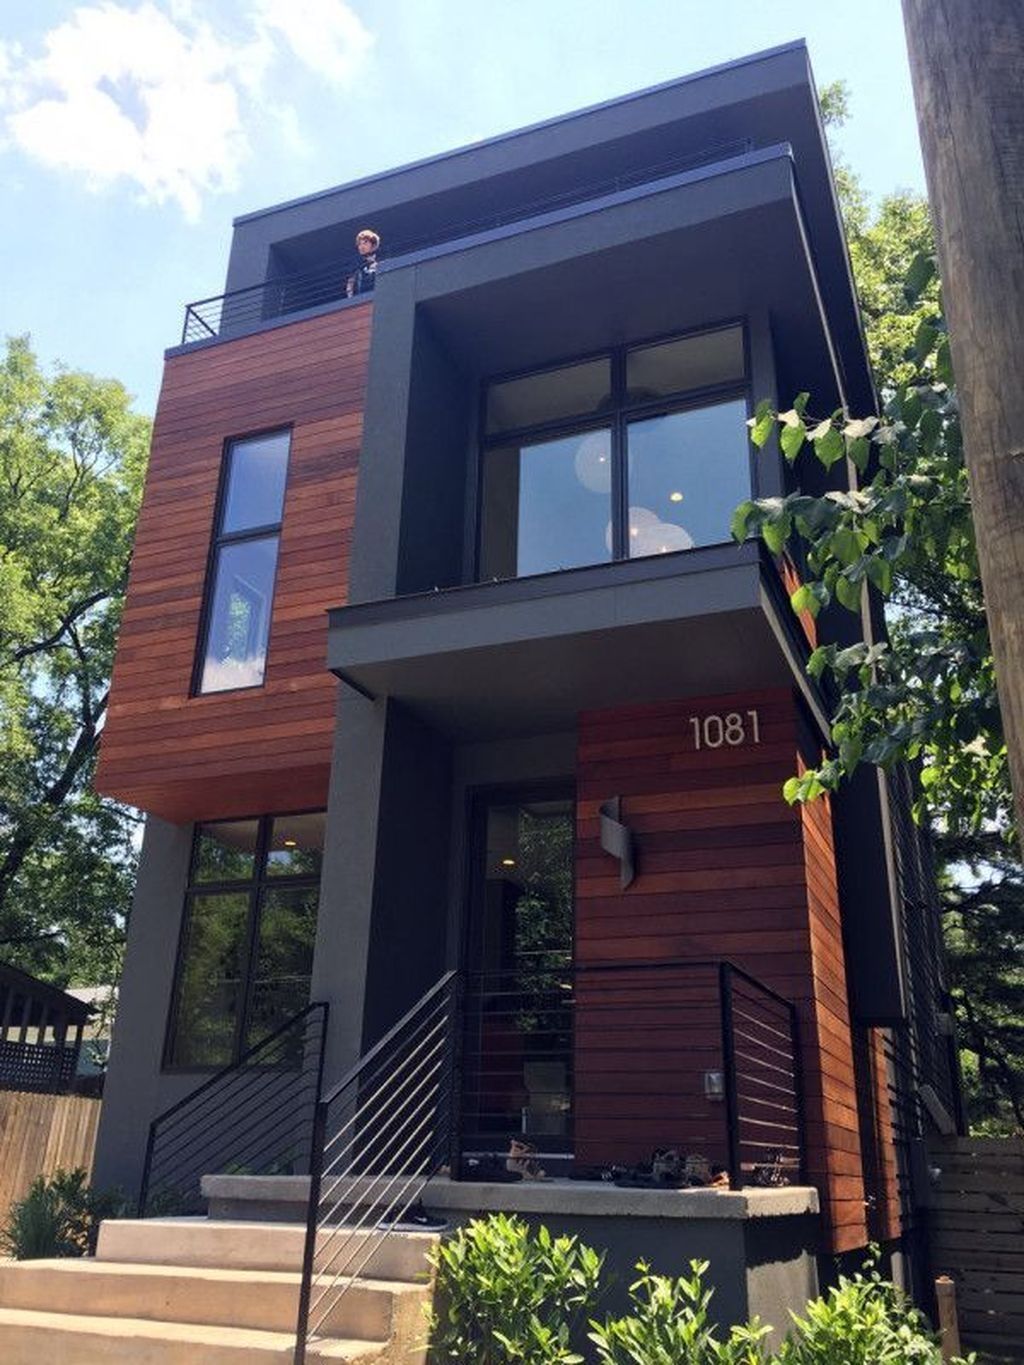 30+ Pretty Small House Design Architecture Ideas – TRENDEDECOR